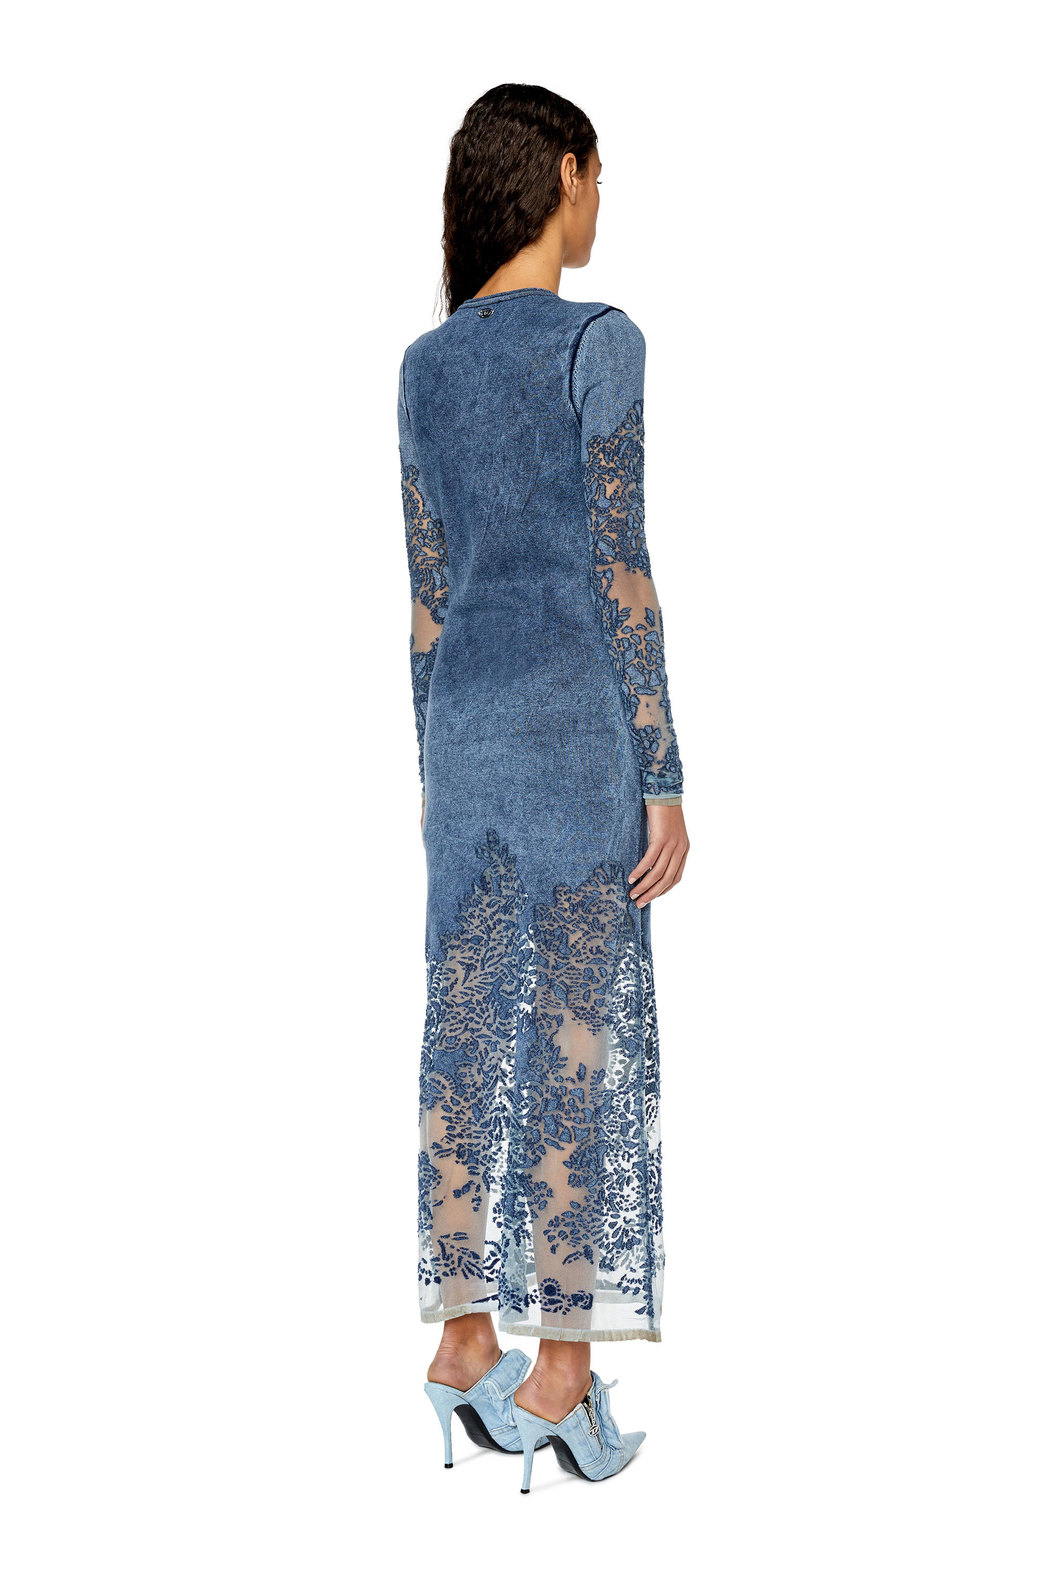 Long V-neck dress with burnout pattern